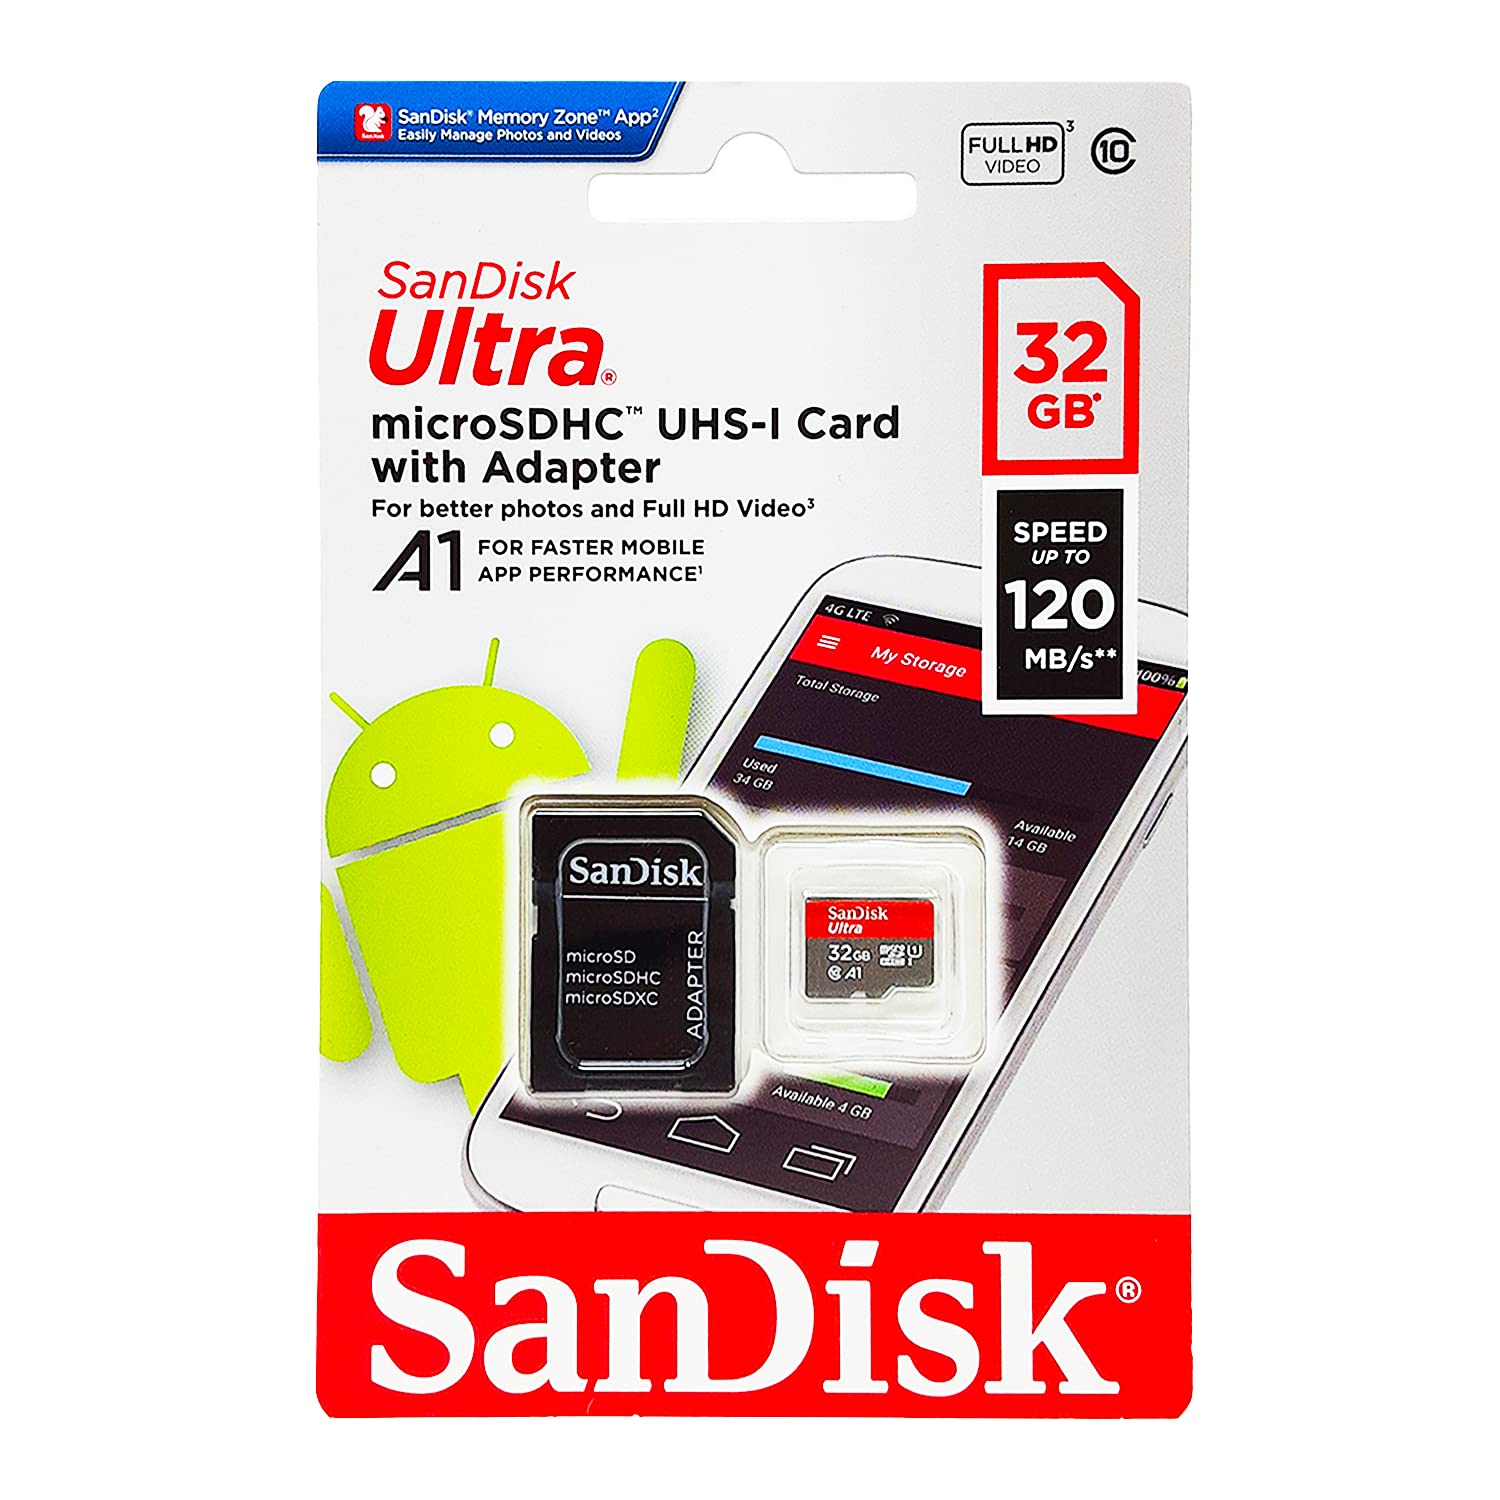 SanDisk (サンディスク) 32GB (2個パック) Ultra microSDHC UHS-I メモリーカード (2x32GB) アダプター..